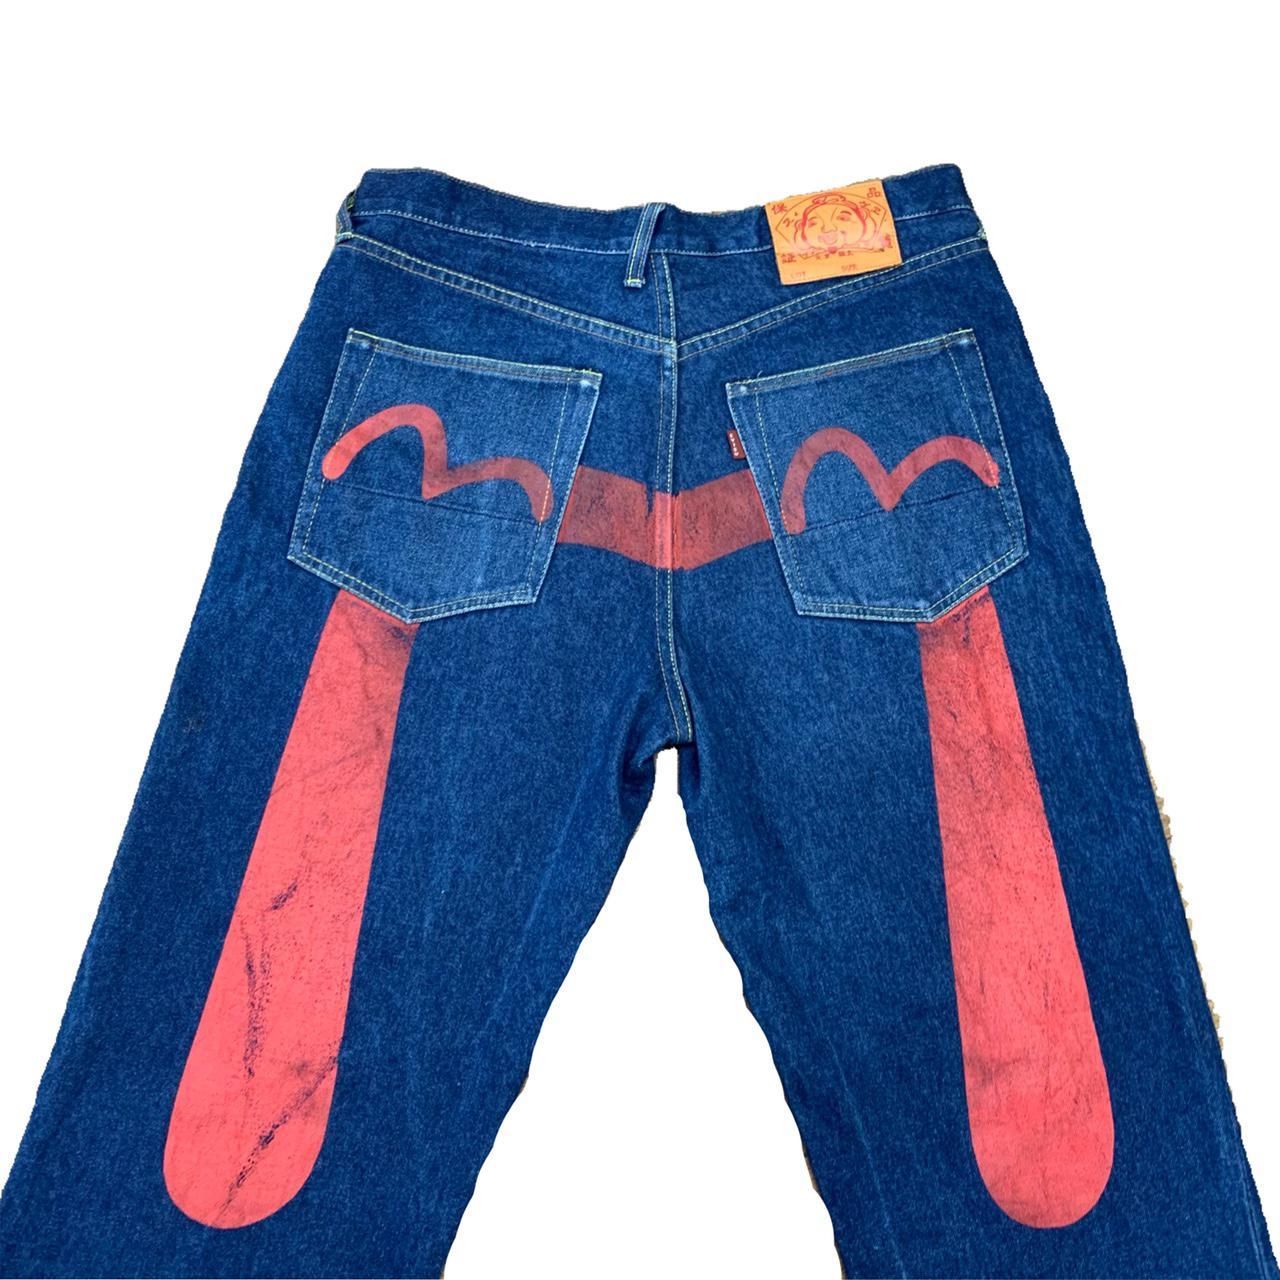 Evisu jeans 👑 Evisu daicock genes low waisted baggy... - Depop